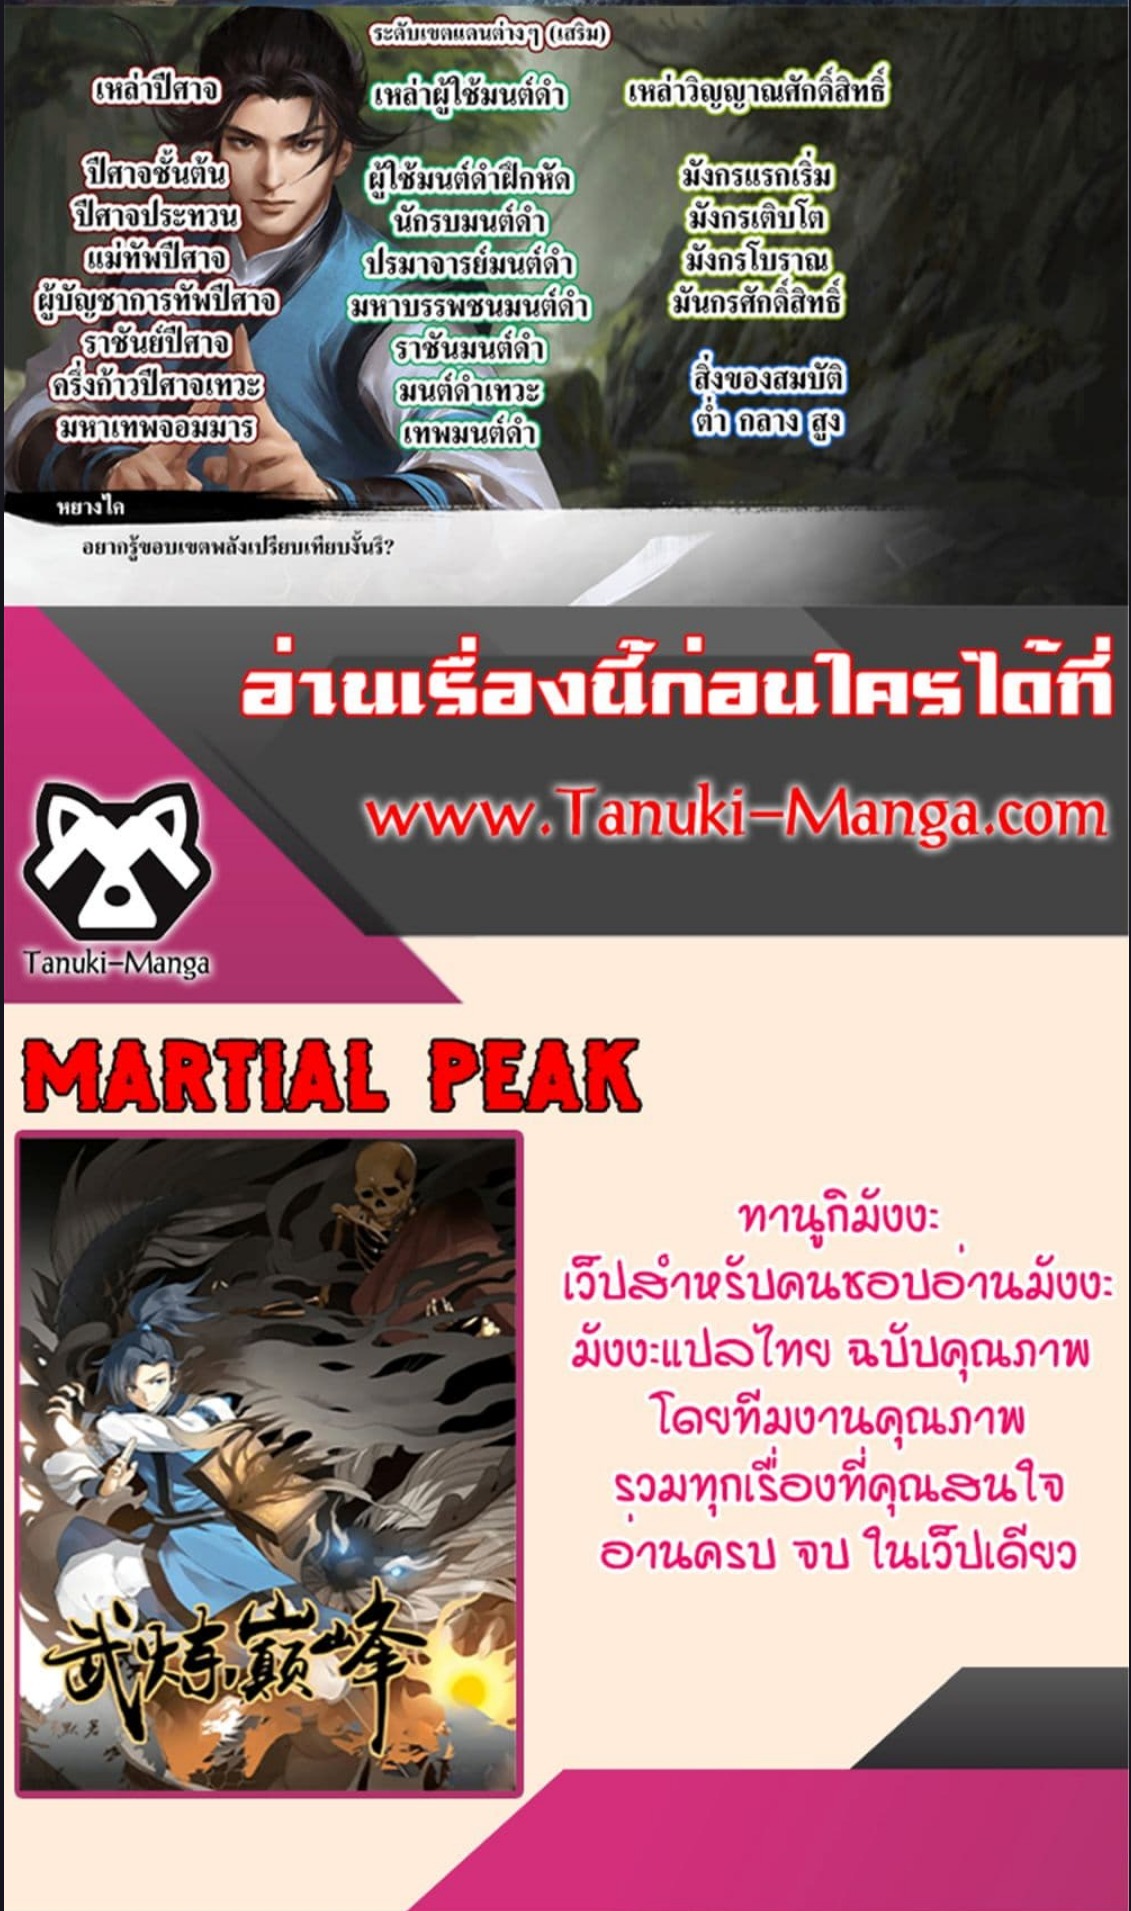 Martial Peak 2869 (5)